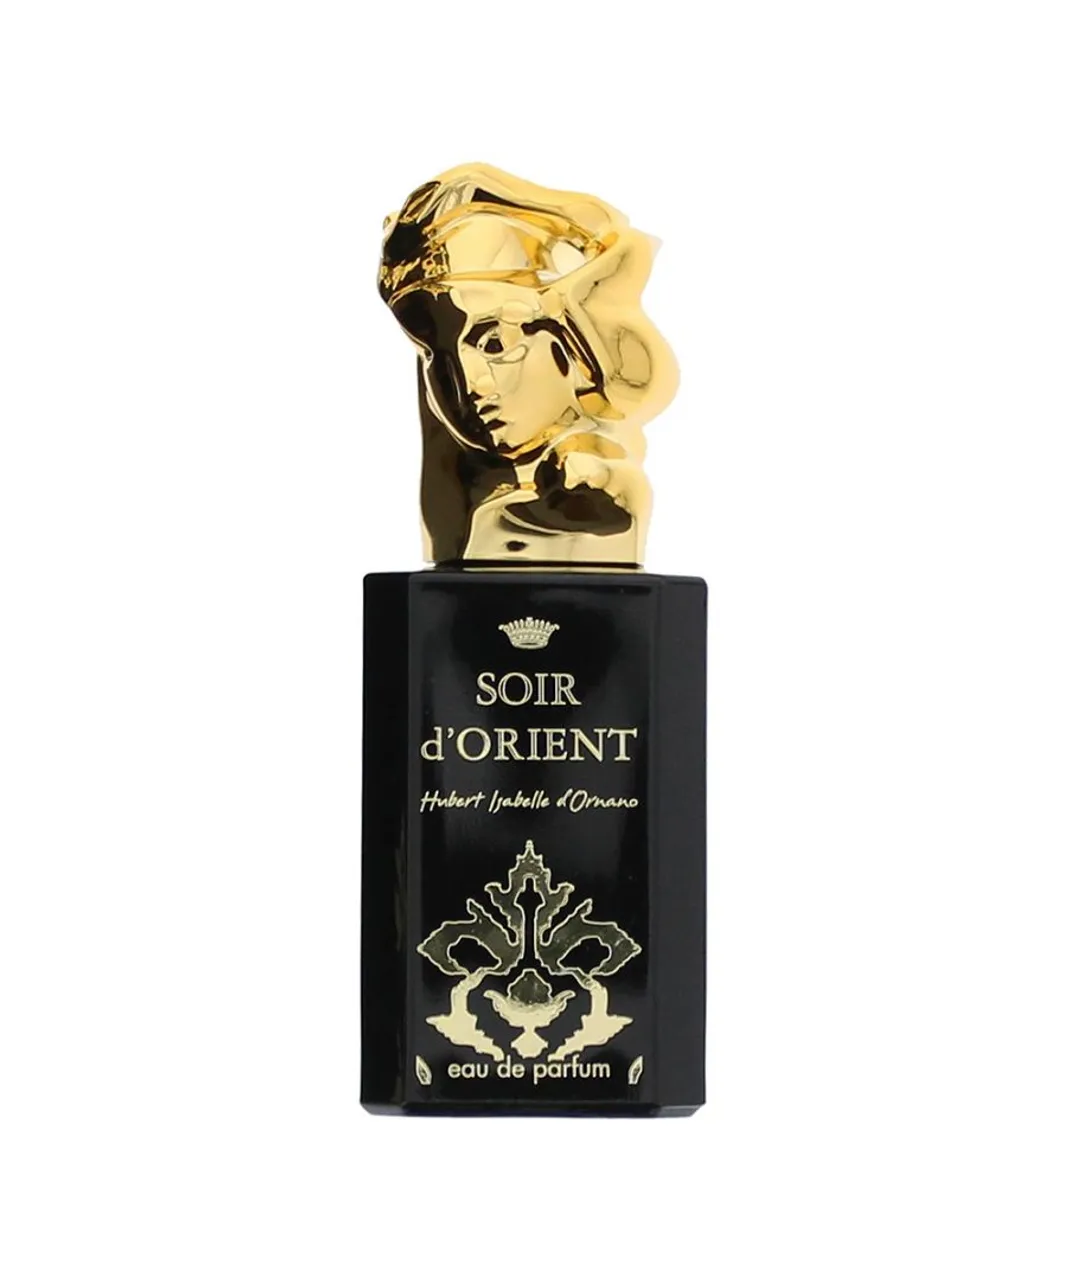 Sisley Womens Soir D'orient Hubert Isabelle D Omano Eau De Parfum 50ml - Black - One Size